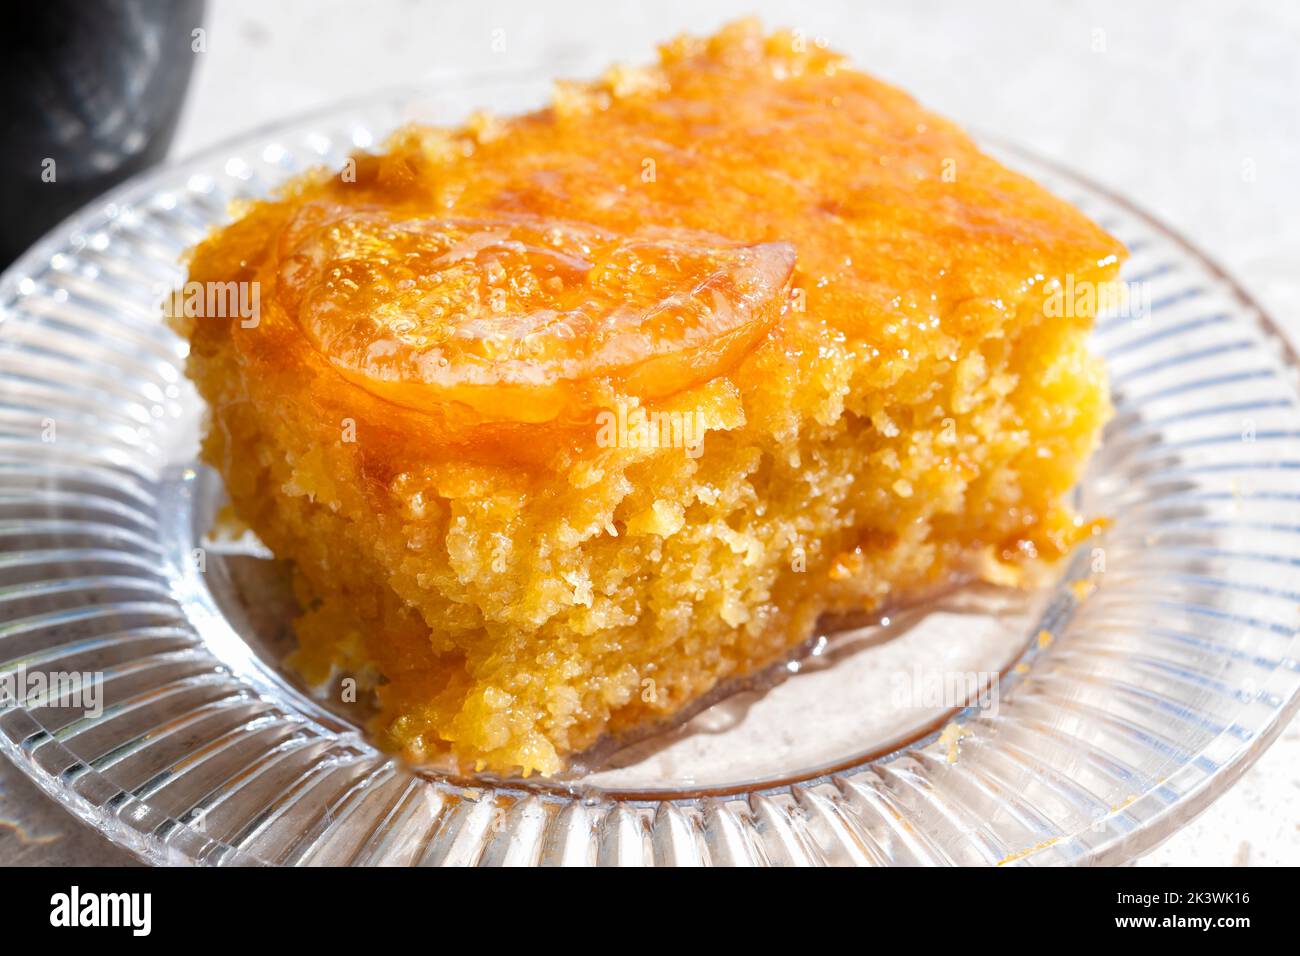 Une portion ou une tranche de tarte orange. Il s'agit d'une spécialité grecque connue sous le nom de Portokalopita. Il est fait avec de la pâte phyllo et trempé dans un sirop d'orange Banque D'Images